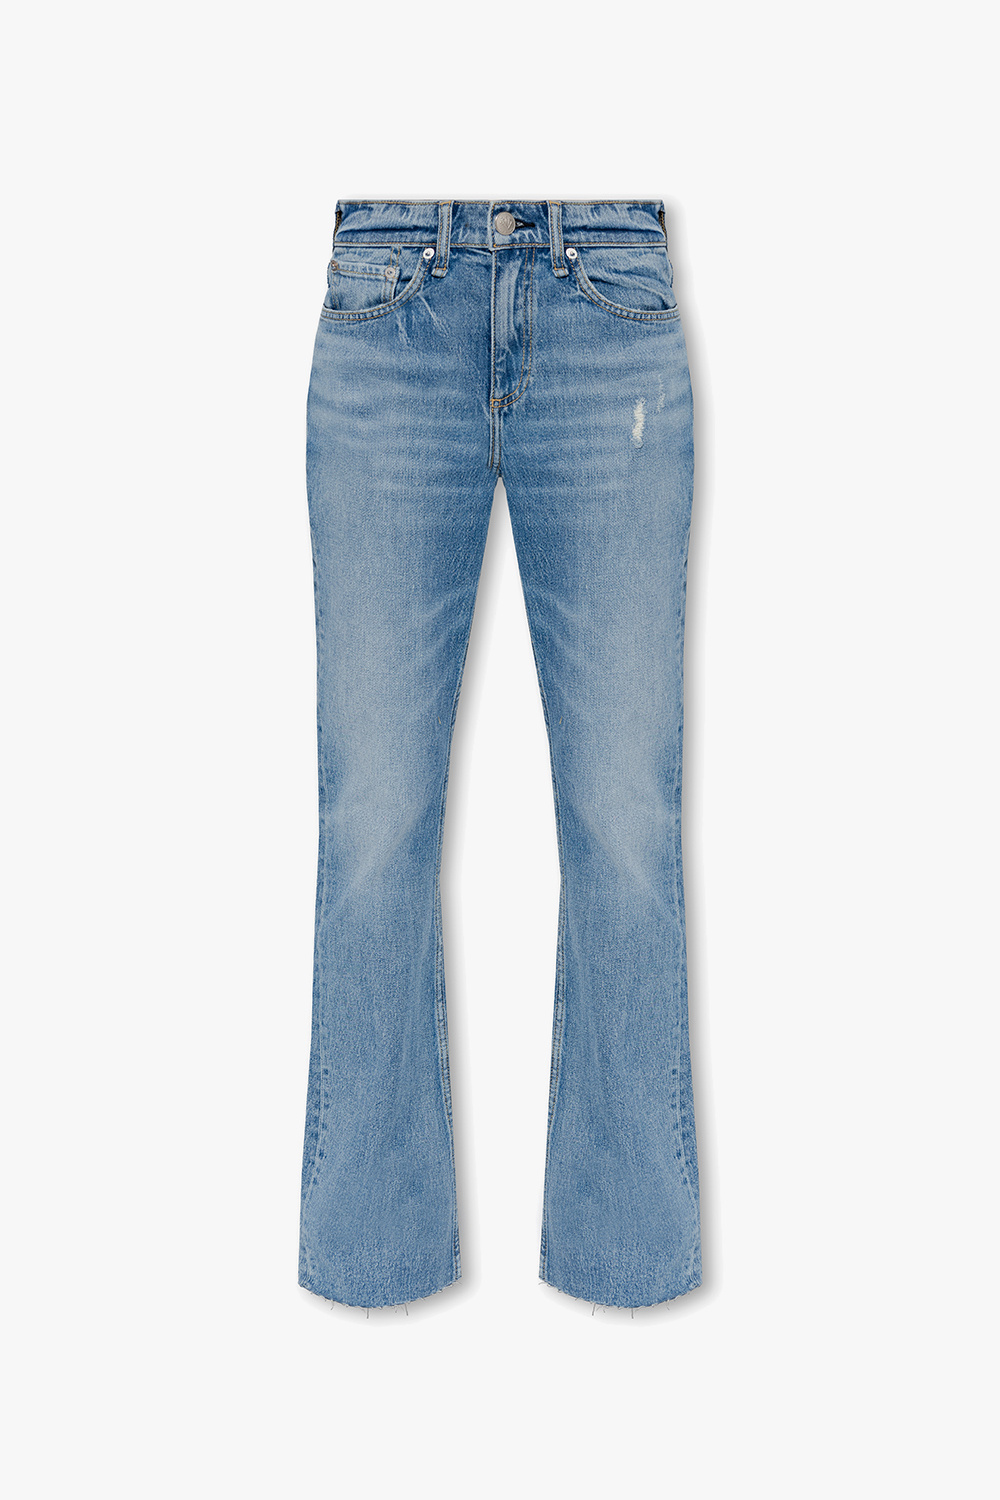 Blue 'Peyton' jeans Rag & Bone - Vitkac Canada